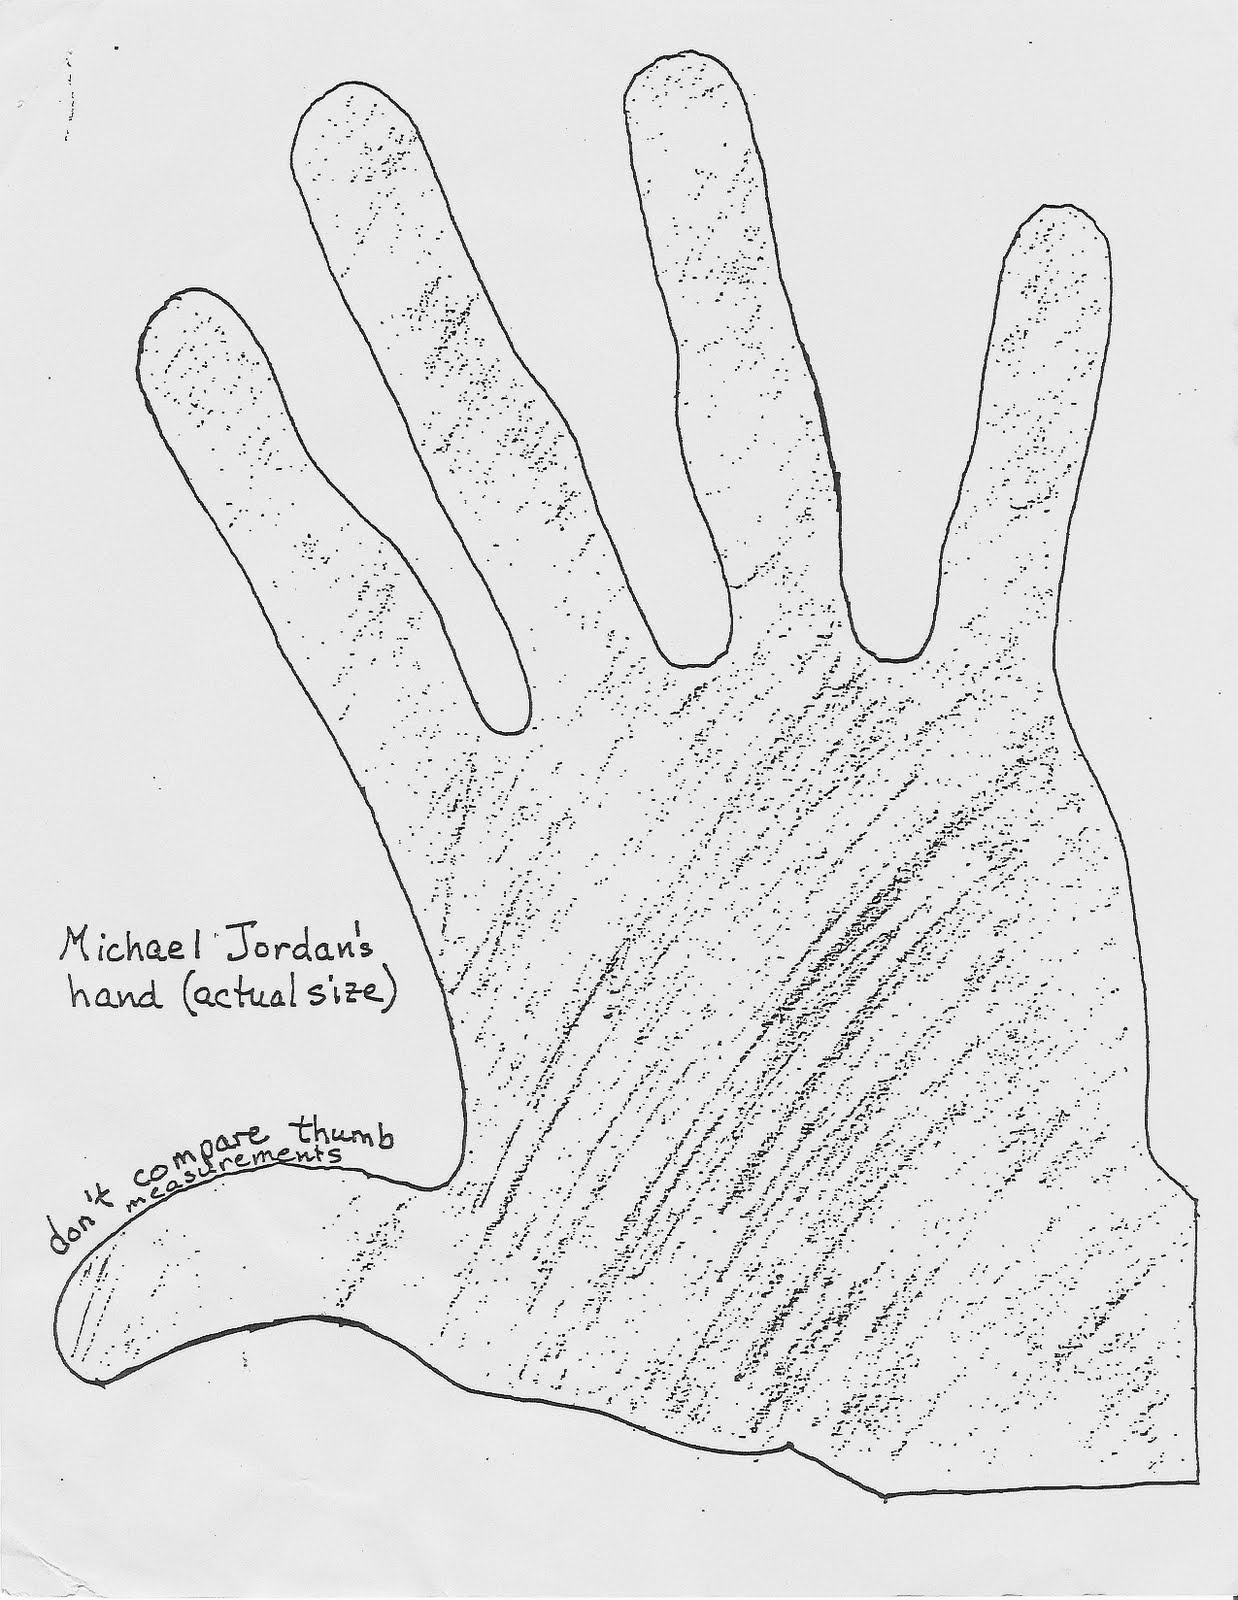 Michael Jordan's hand